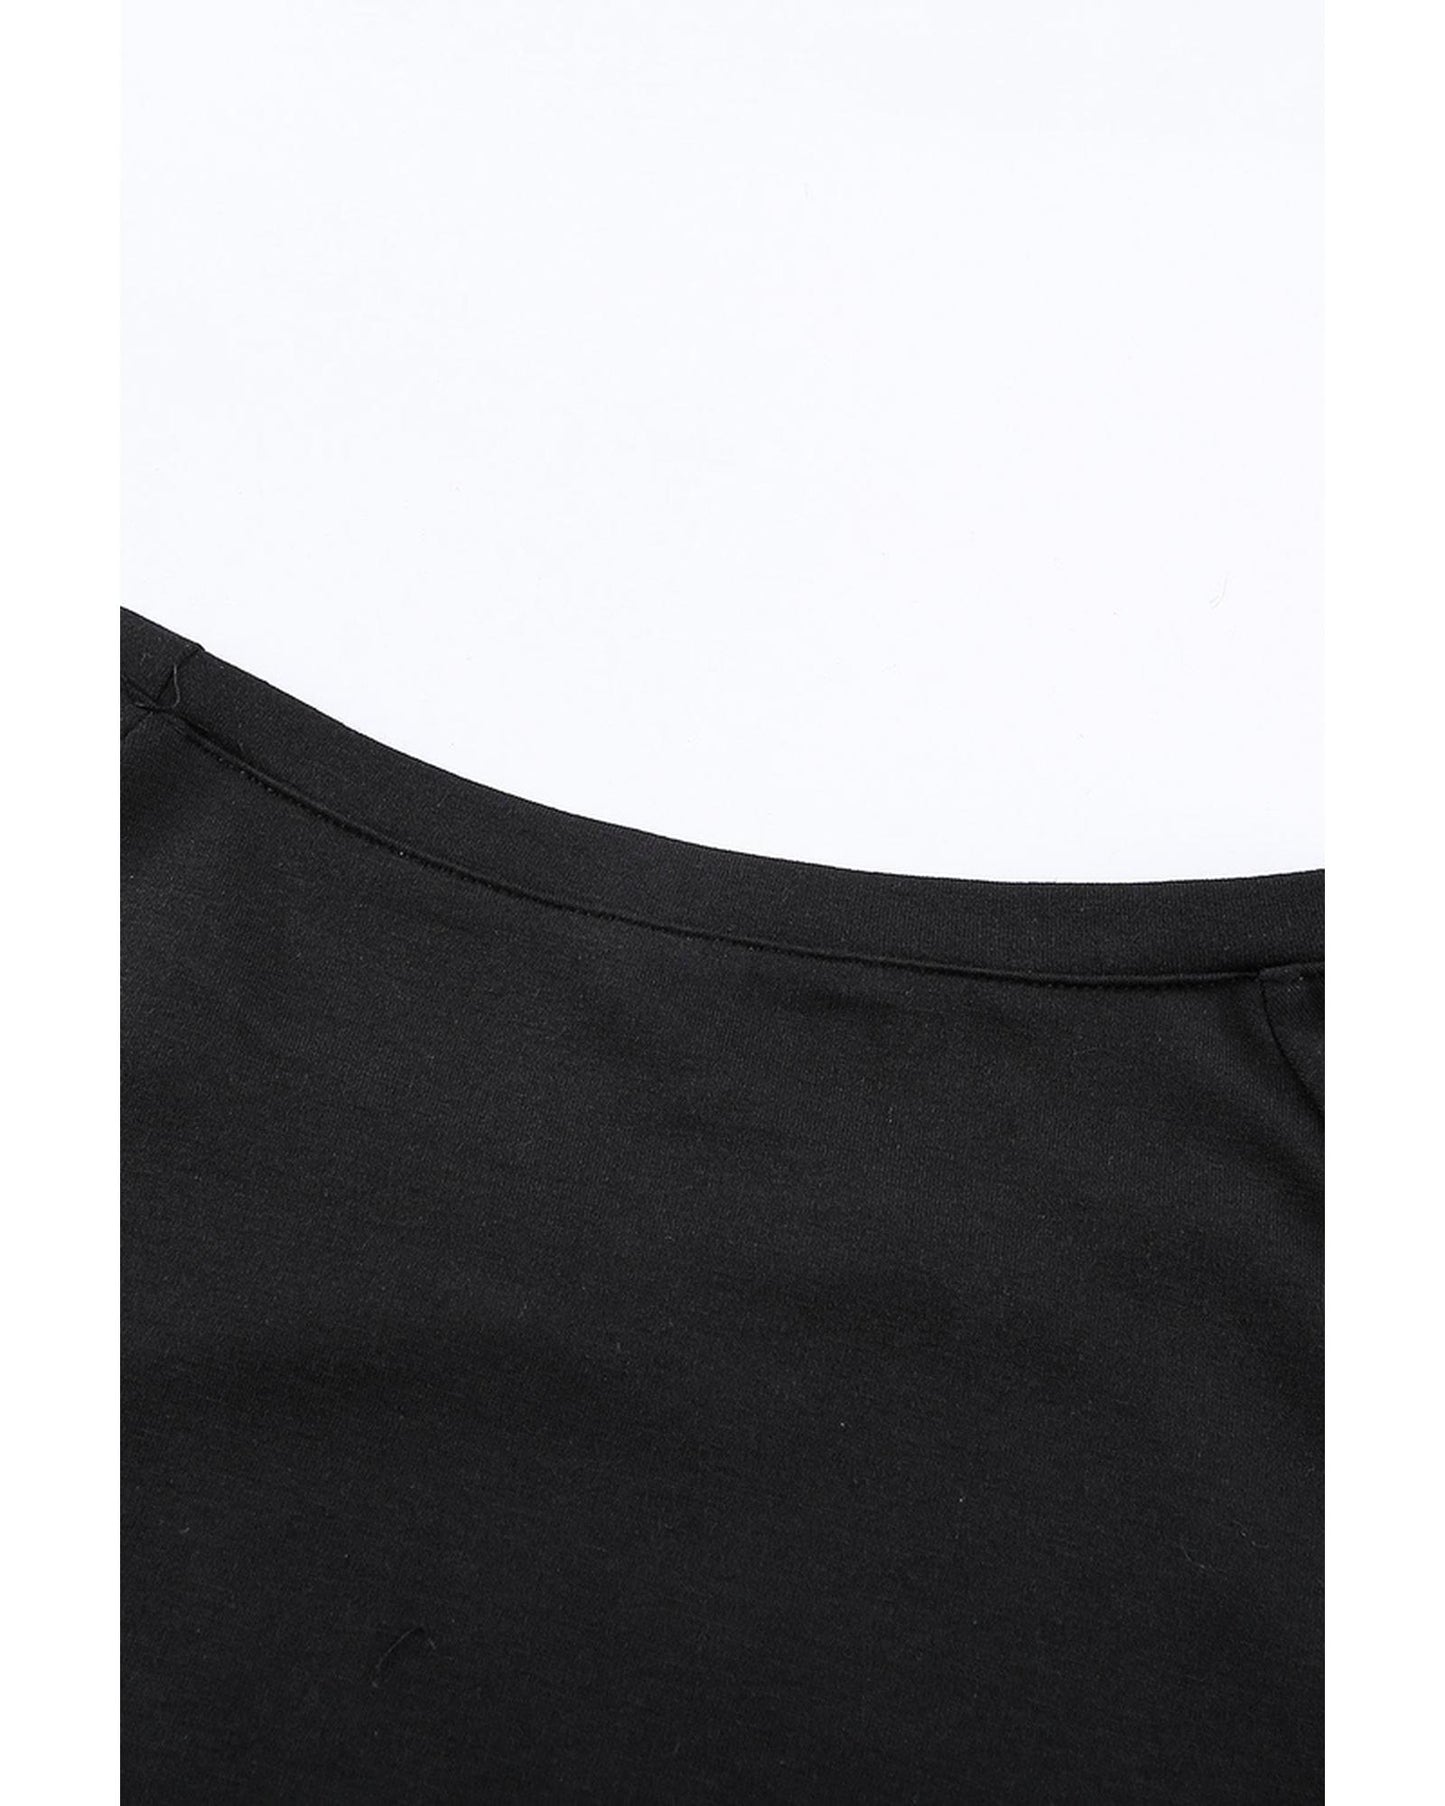 Azura Exchange Black Sweatshirt - 2XL